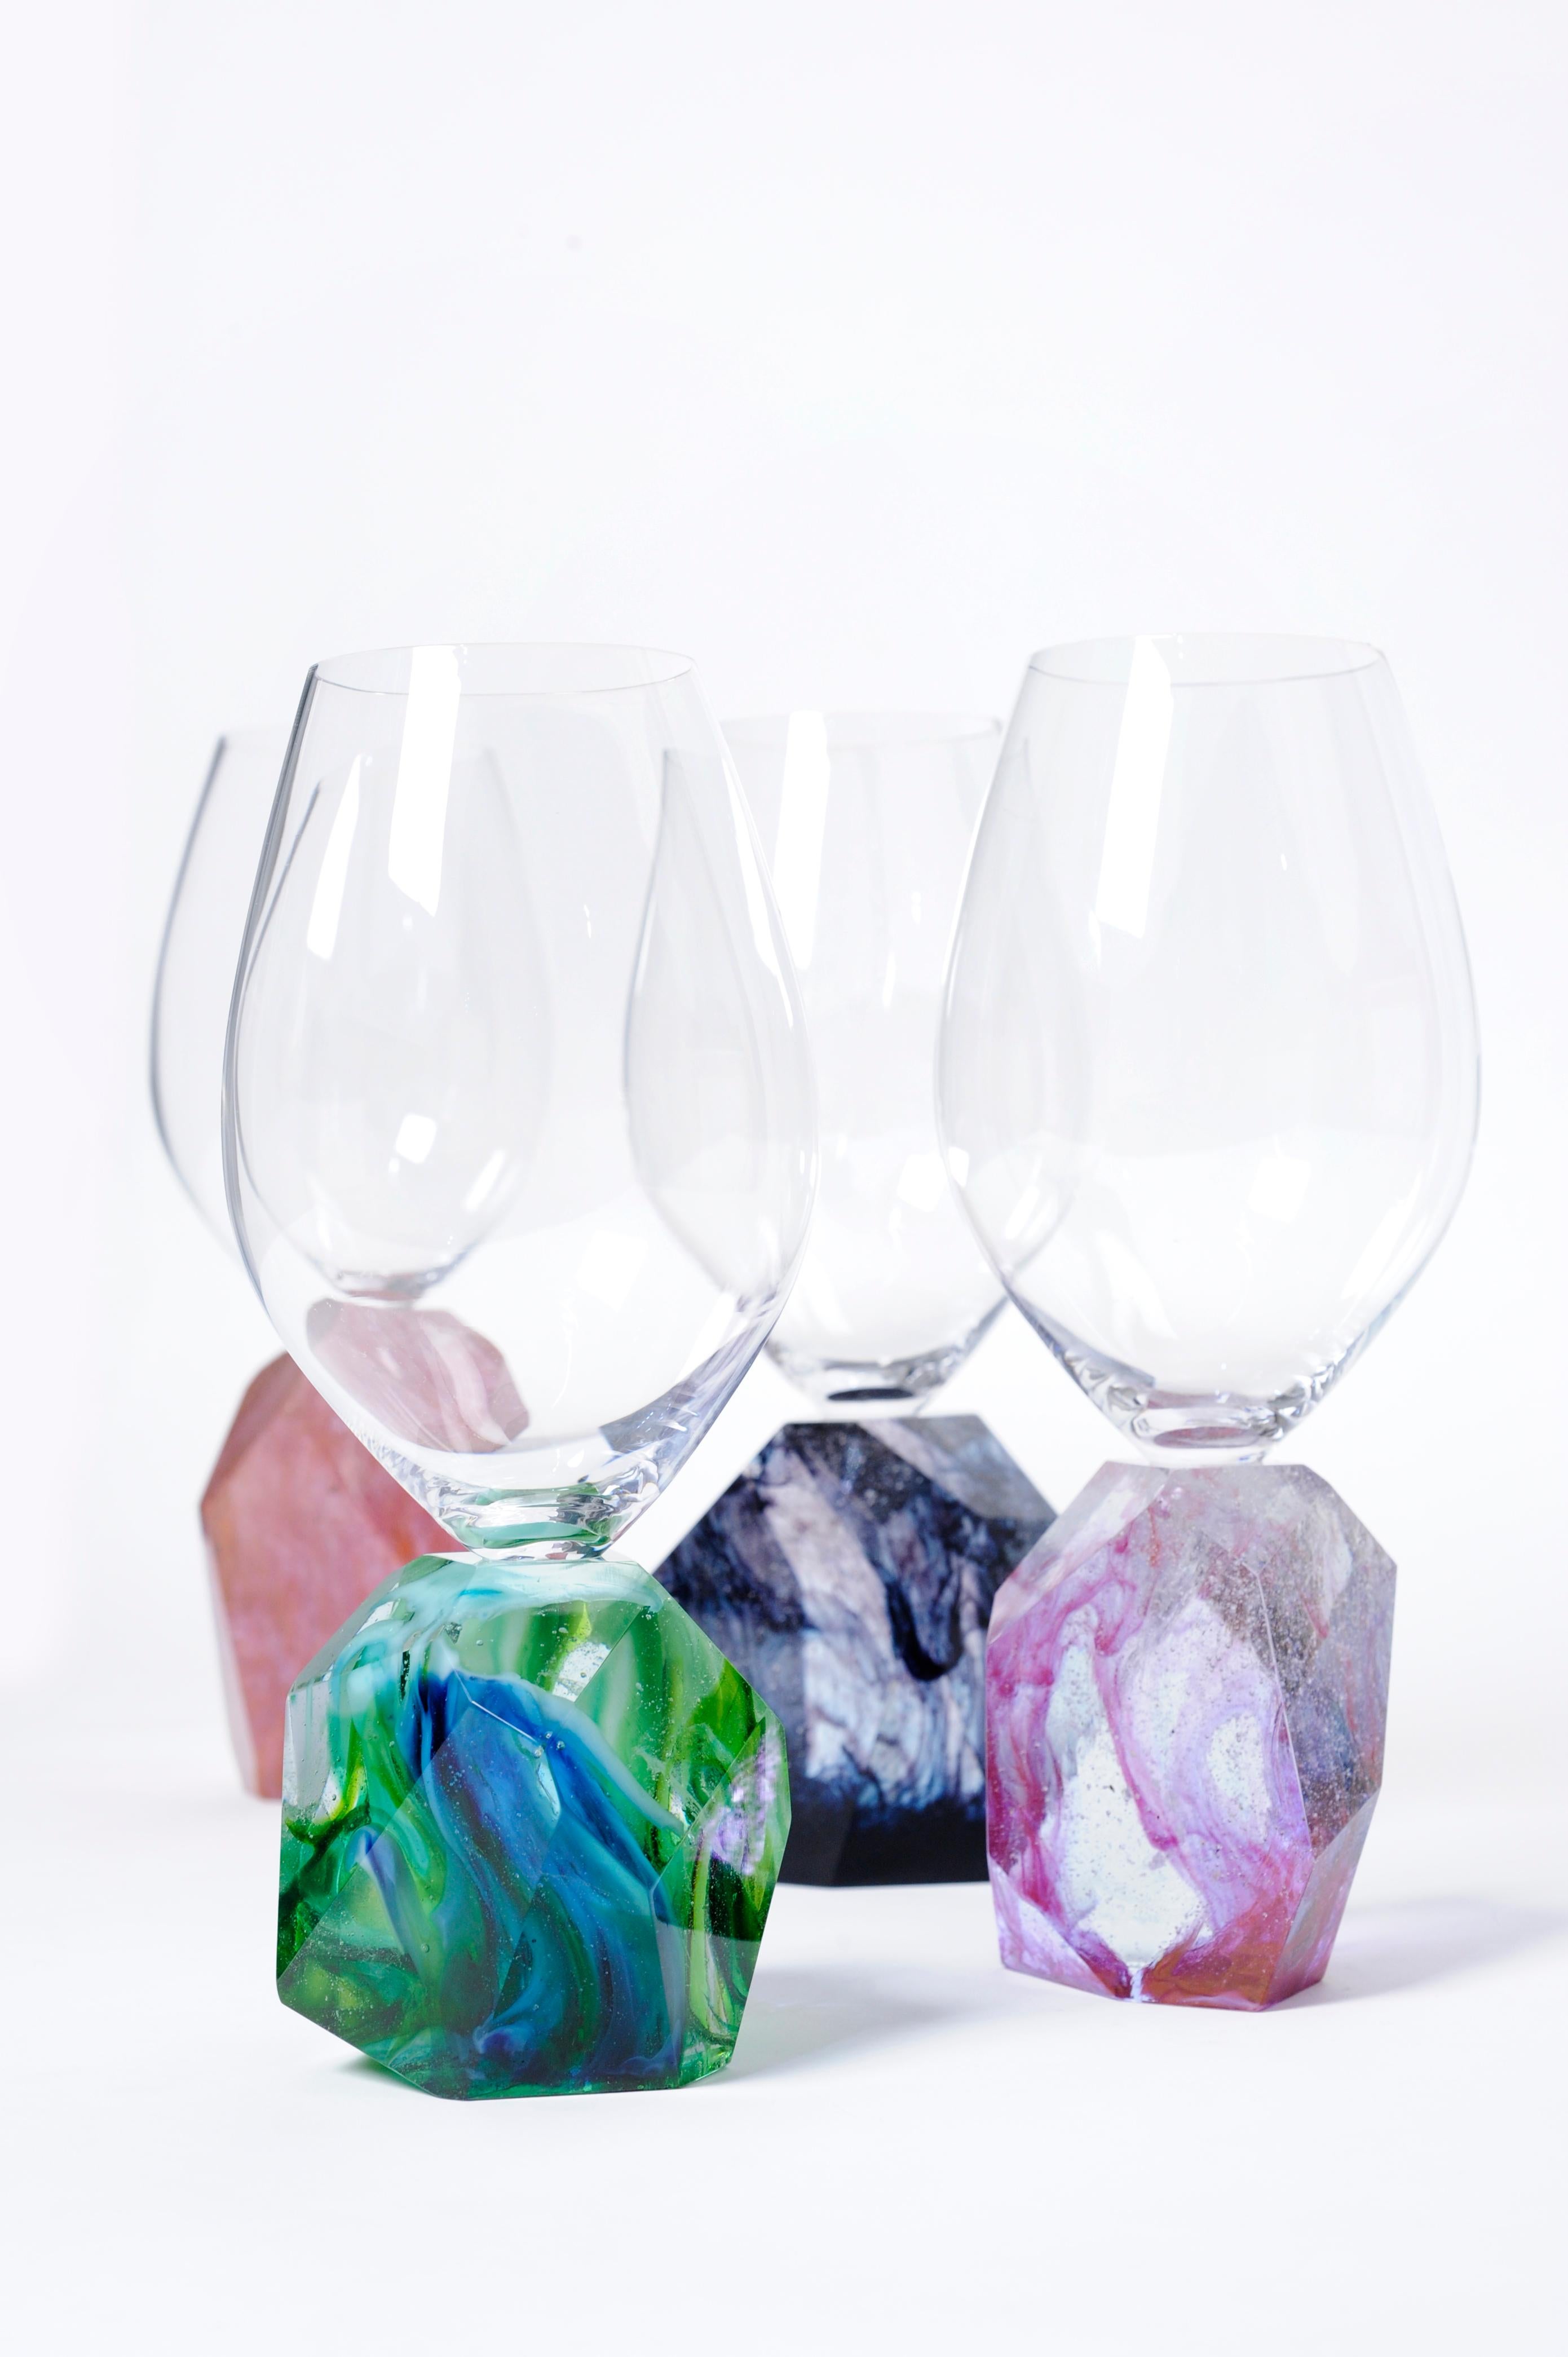 Das neue Design von Orfeo Quagliata, ein Set von vier Weingläsern, die von Hand aus Kristall höchster Qualität hergestellt werden.
Jede Facette des Griffs wird einzeln hergestellt, um später in unserer Werkstatt poliert zu werden.
Farbige Akzente,